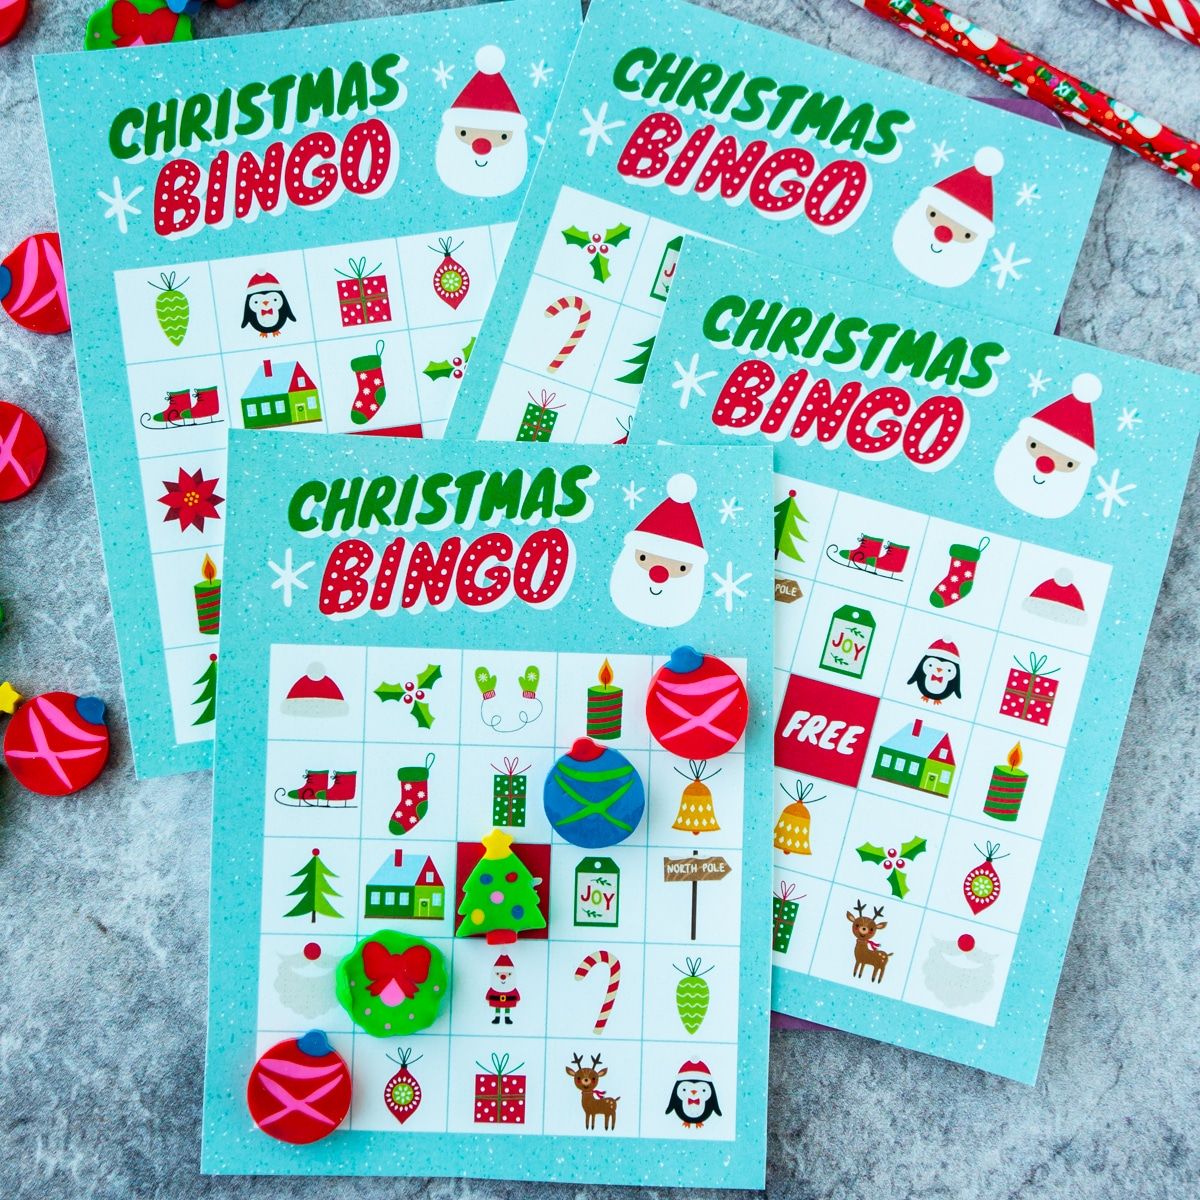 Quatro cartelas de bingo de Natal empilhadas umas sobre as outras